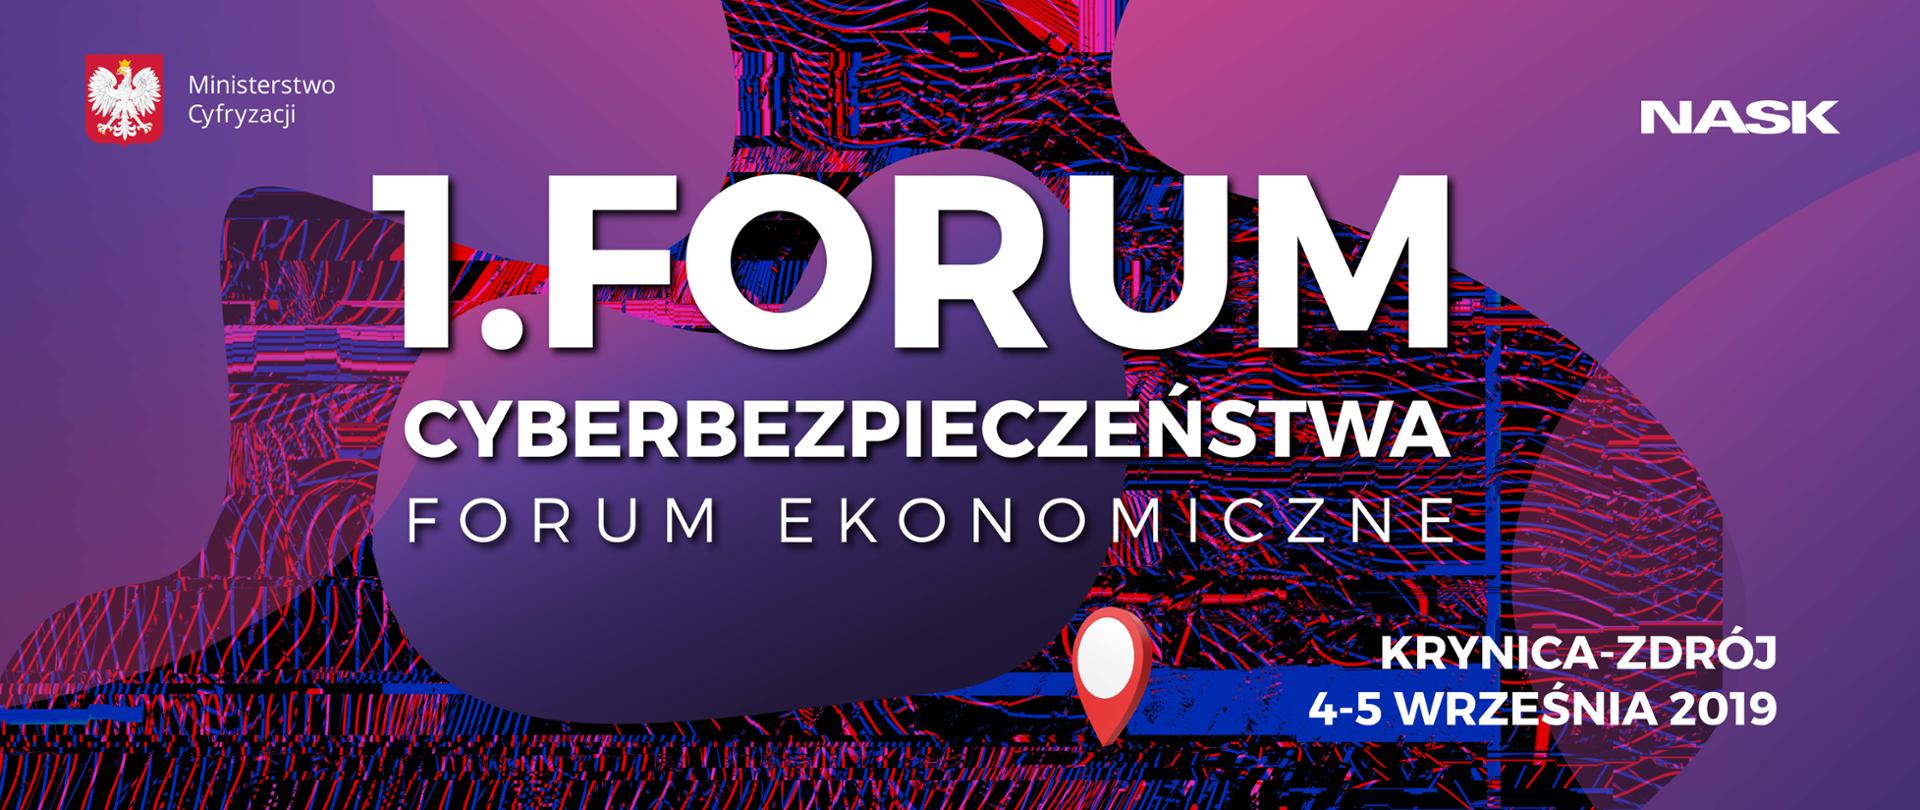 Grafika. Kolorowe tło i napis: Pierwsze Forum Cyberbezpieczeństwa. Krynica-Zdrój 4-5 września 2019.